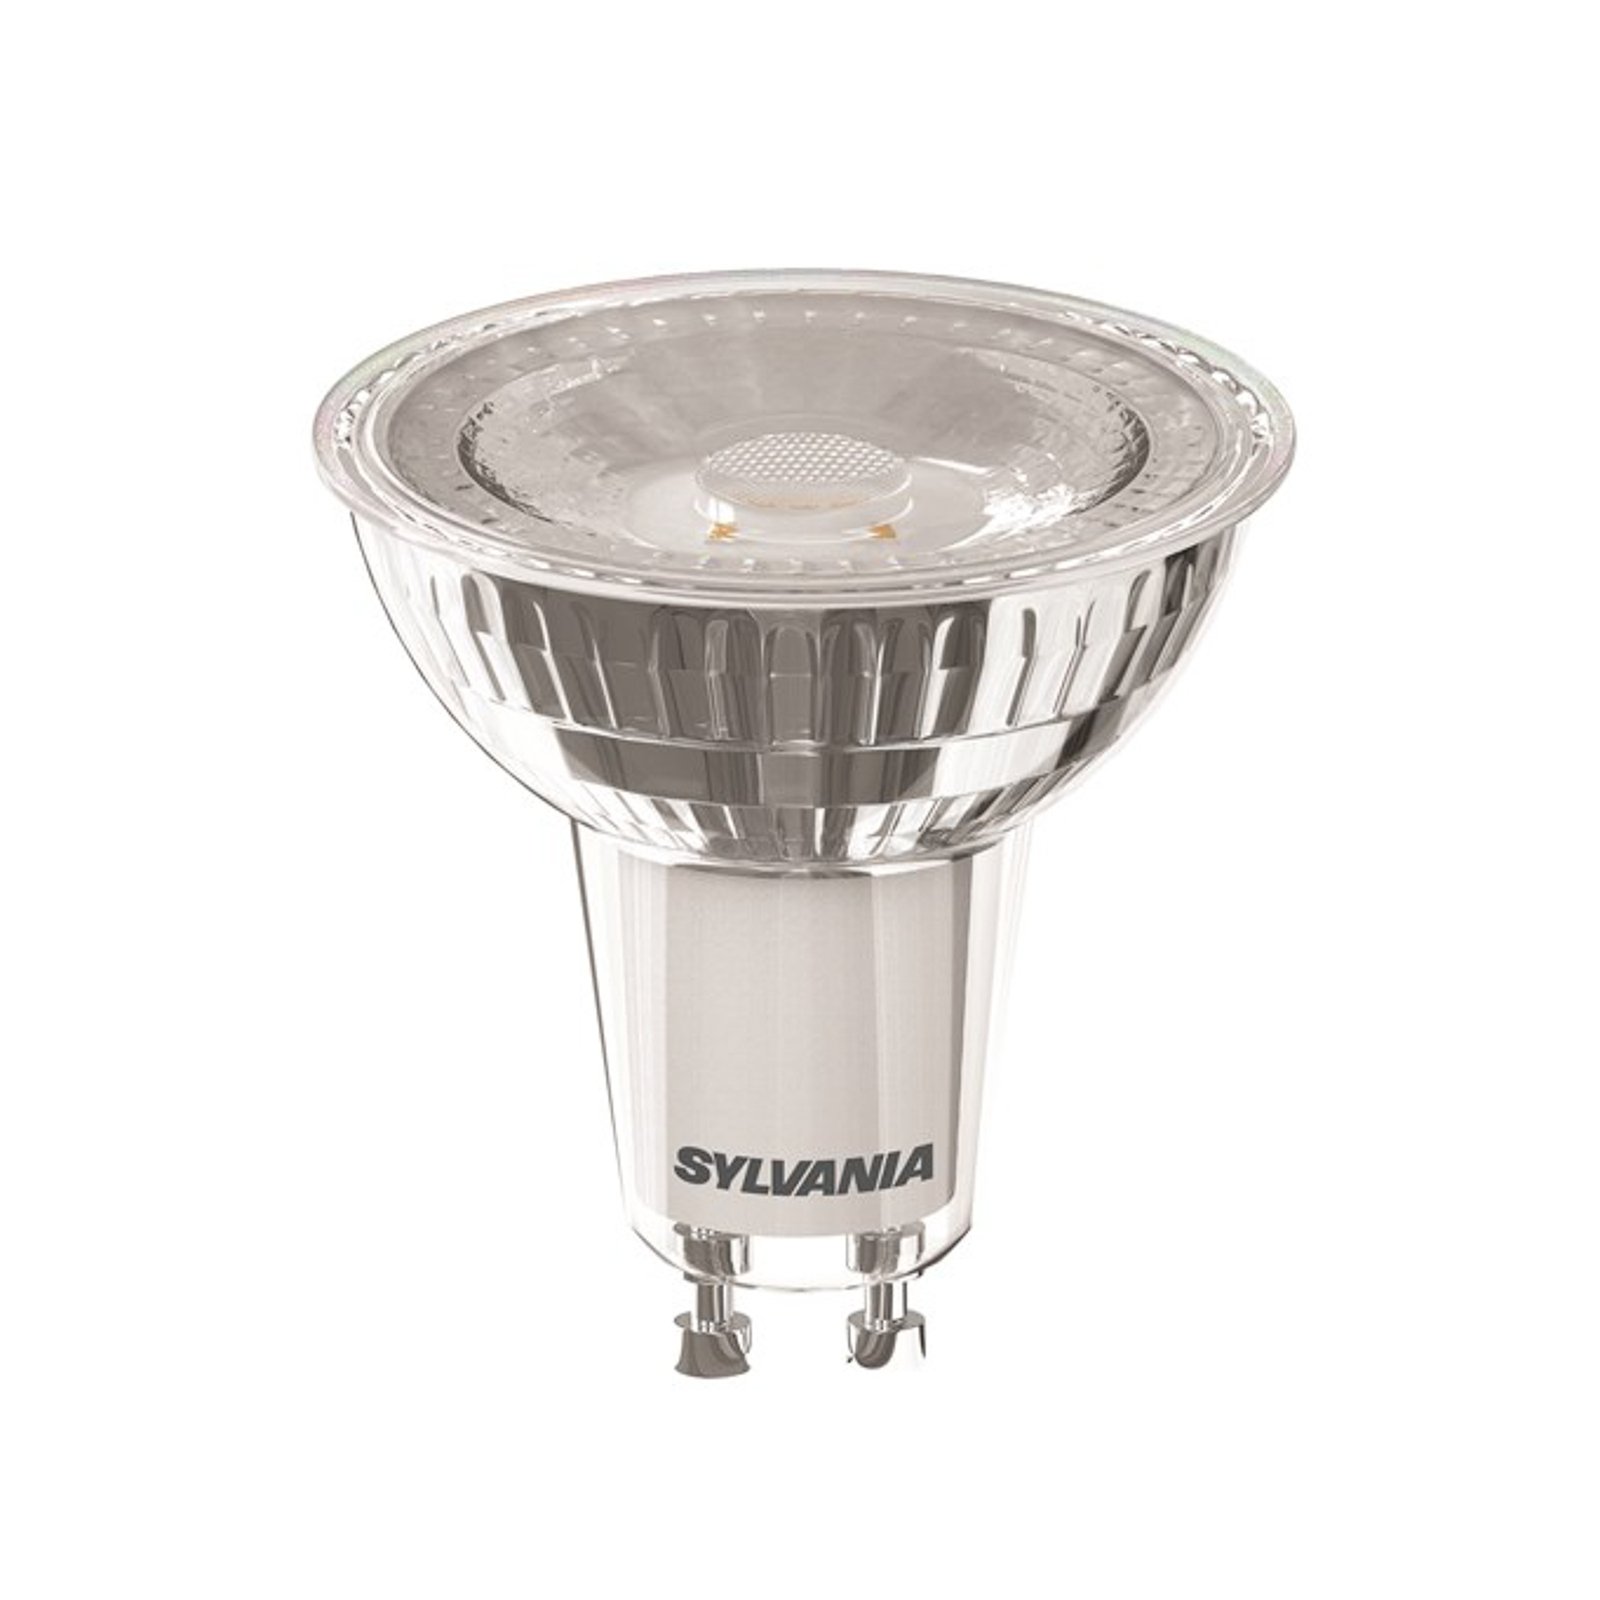 Sylvania reflector LED bulb GU10 6W 36° 865 dim